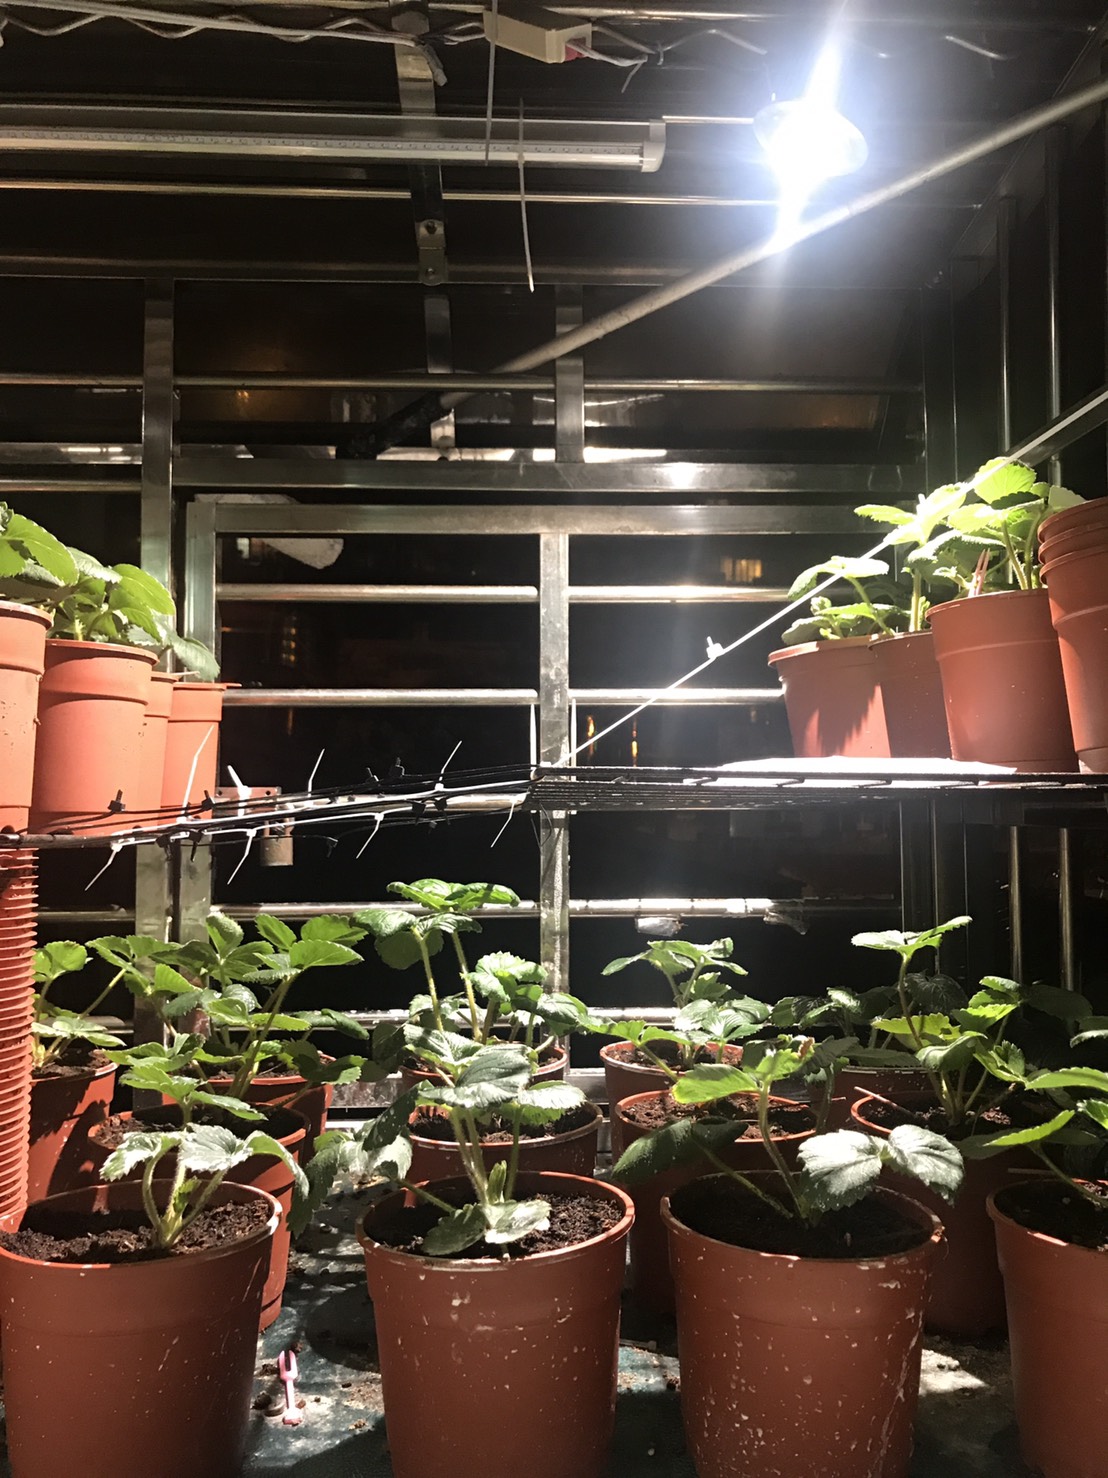 農業最佳處方籤 使用分享 家庭園藝陽台草莓栽培經驗分享 居家型全光譜led植物燈